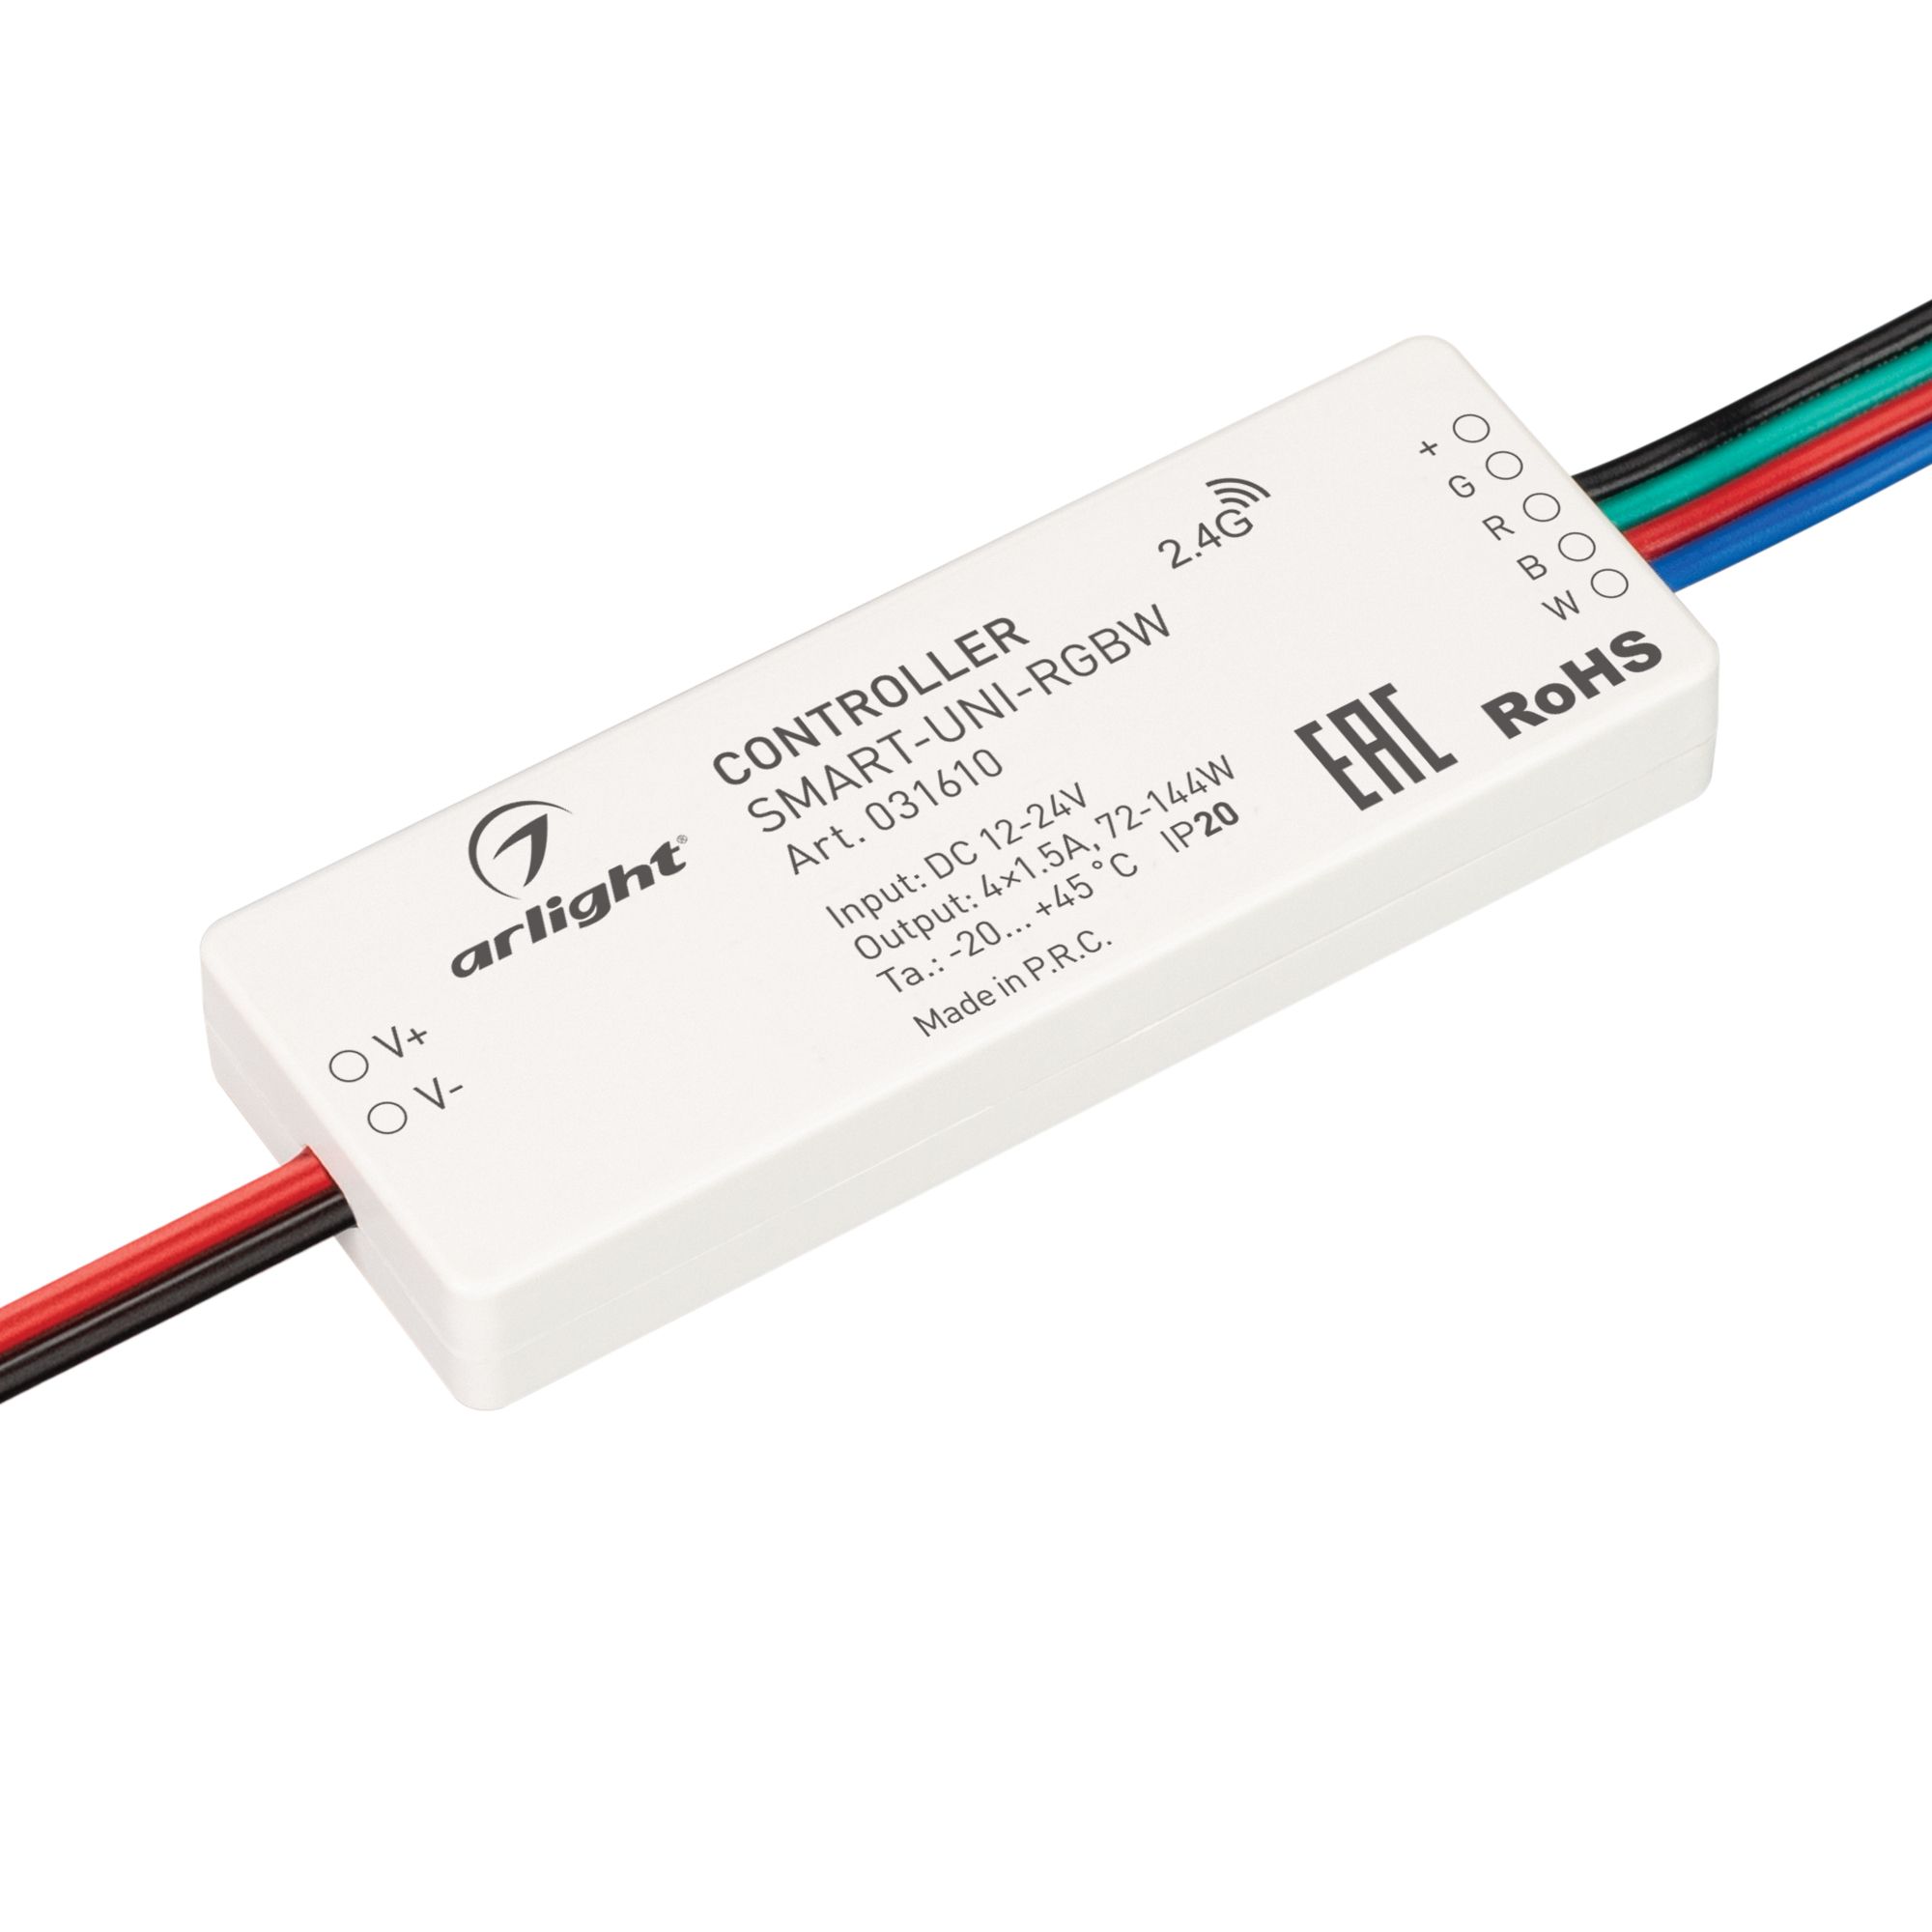 Контроллер SMART-UNI-RGBW (12-24V, 4x1.5A, 2.4G) (Arlight, IP20 Пластик, 5 лет) контроллер easybus для светодиодной ленты 5 в 1 монохромный cct rgb rgbw rgb cct 5x4a es b dc